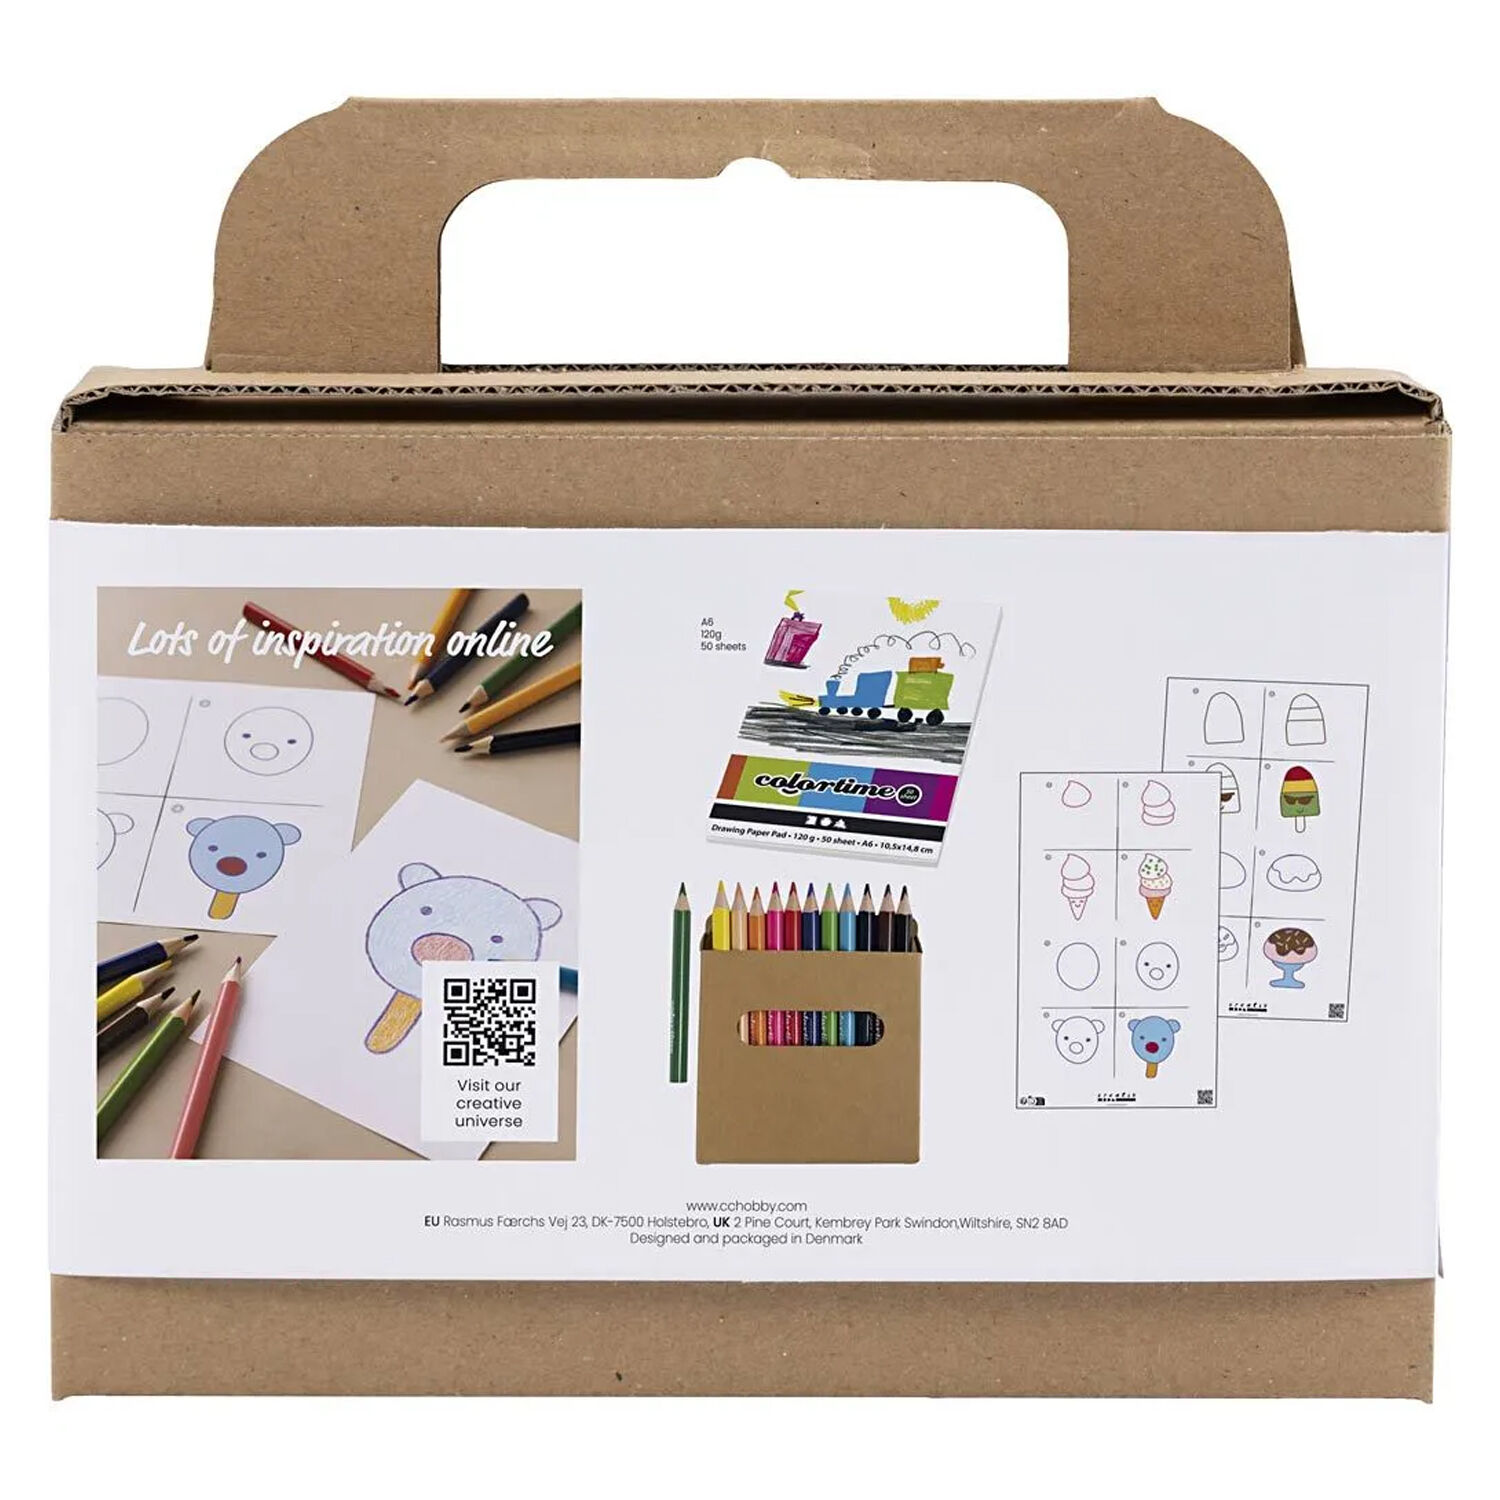 NEU Mini Bastelset Zeichnen, Süße Sachen - DIY Set - Bastelpackungen  Papiere & Co. Produkte 